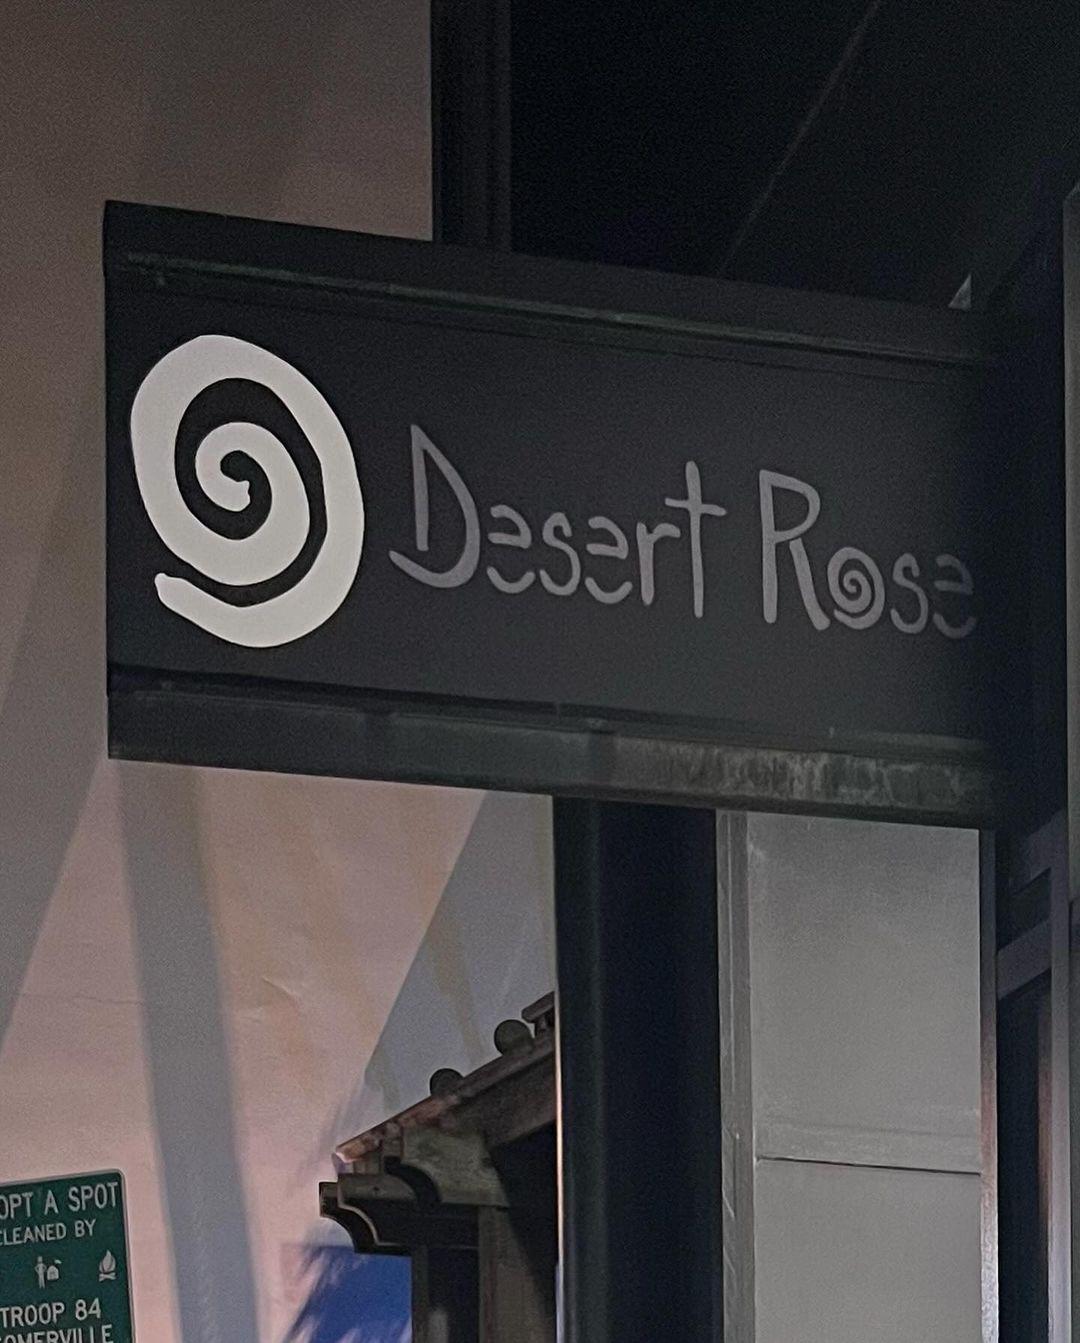 Desert Rose - Hair Salon in Somerville, New Jersey